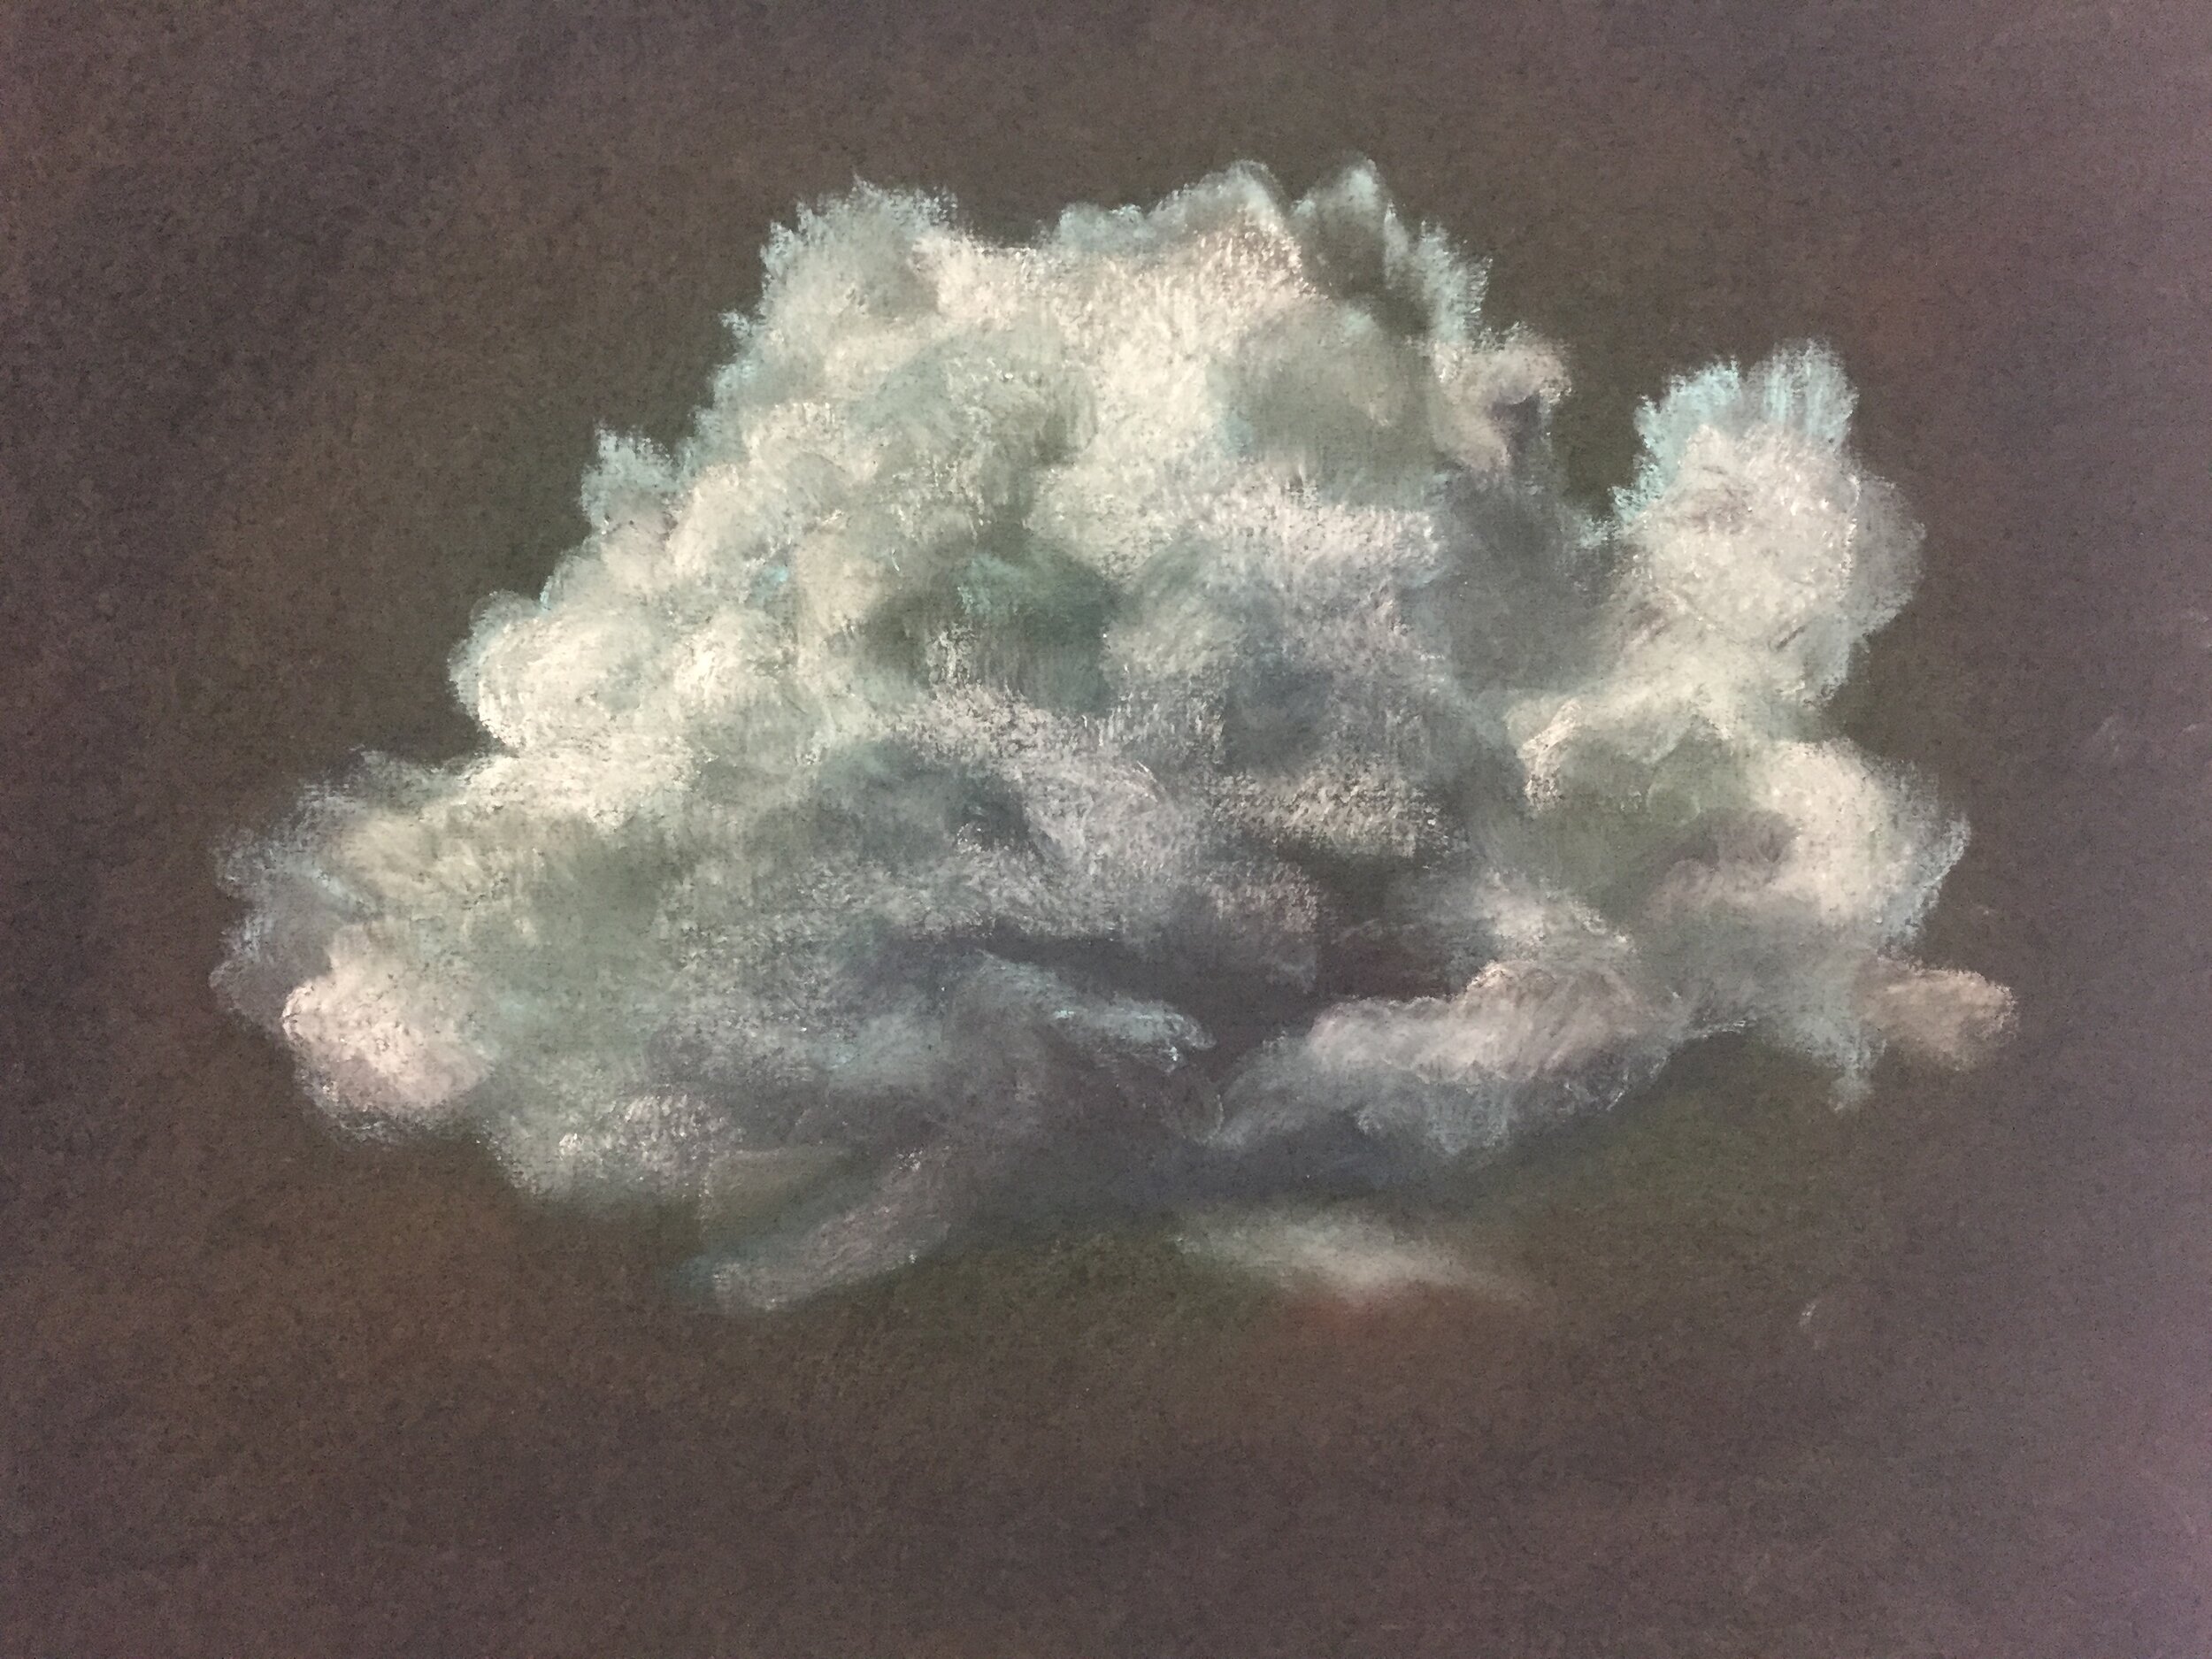  Cloud, 2020, pastel on paper, 13” X 16” 